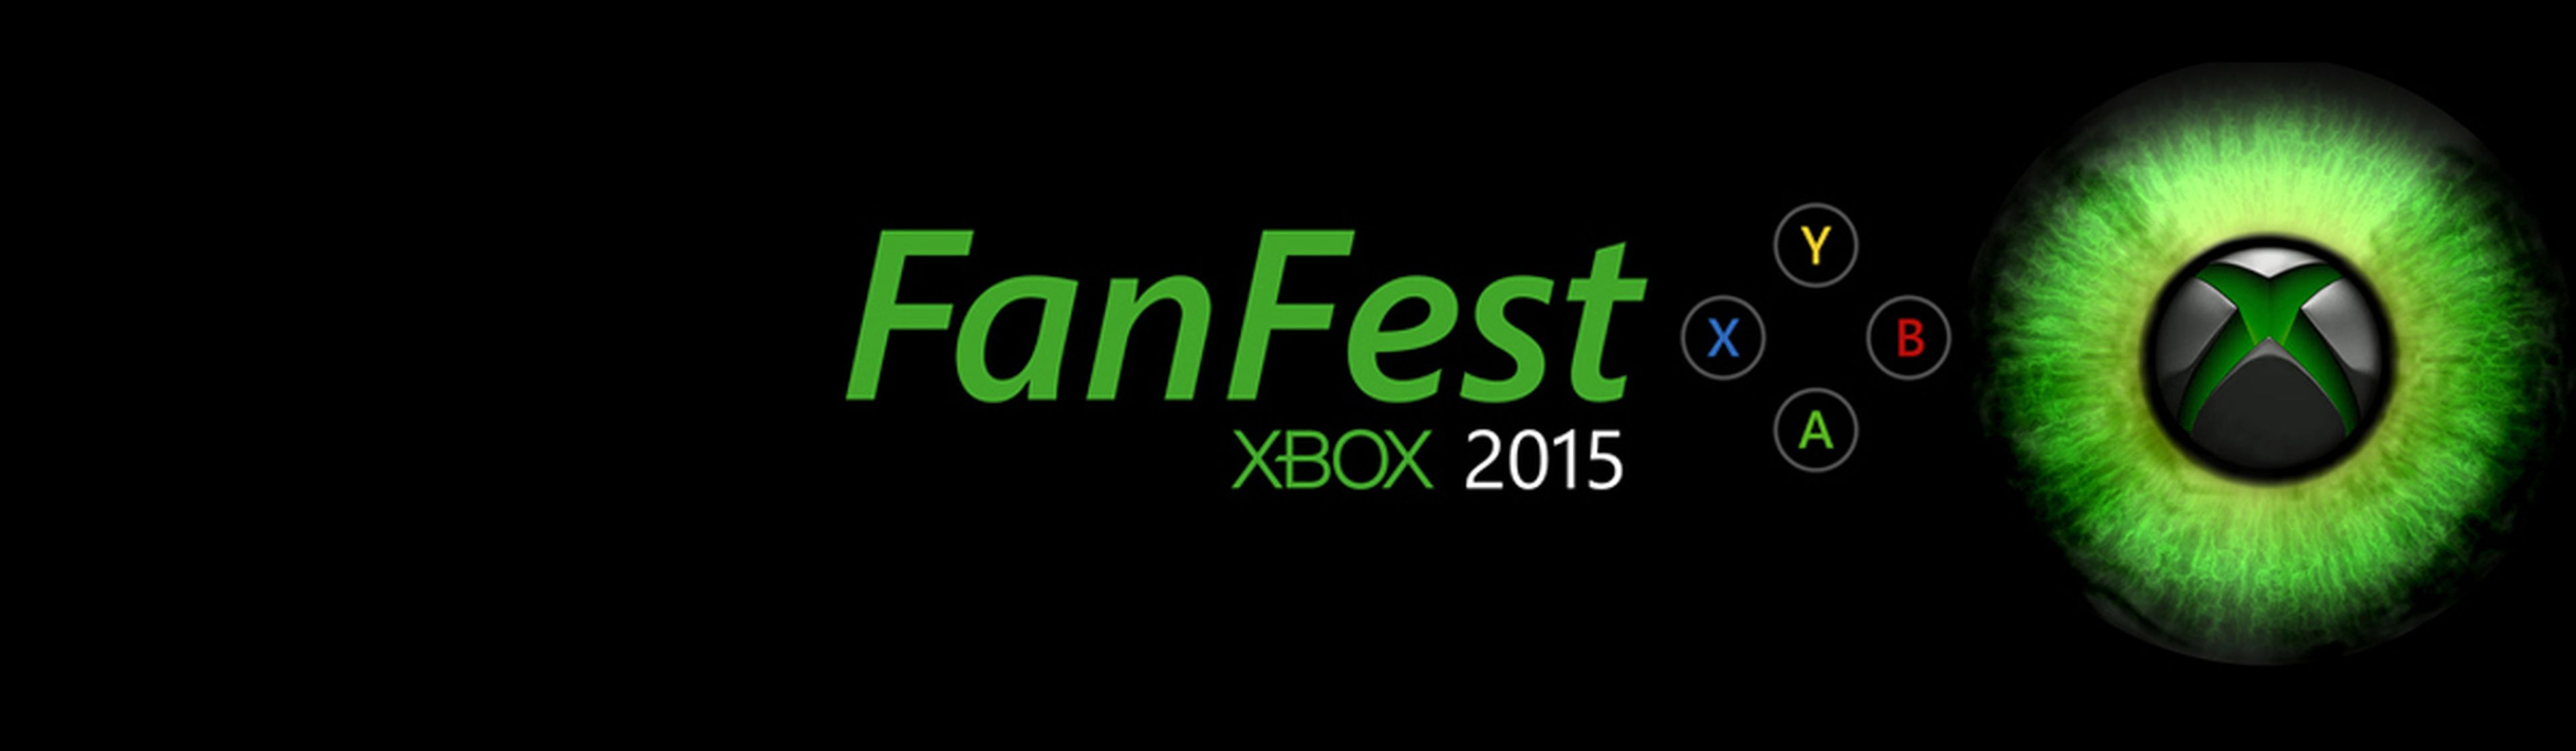 Fanfest Xbox 2015 logo